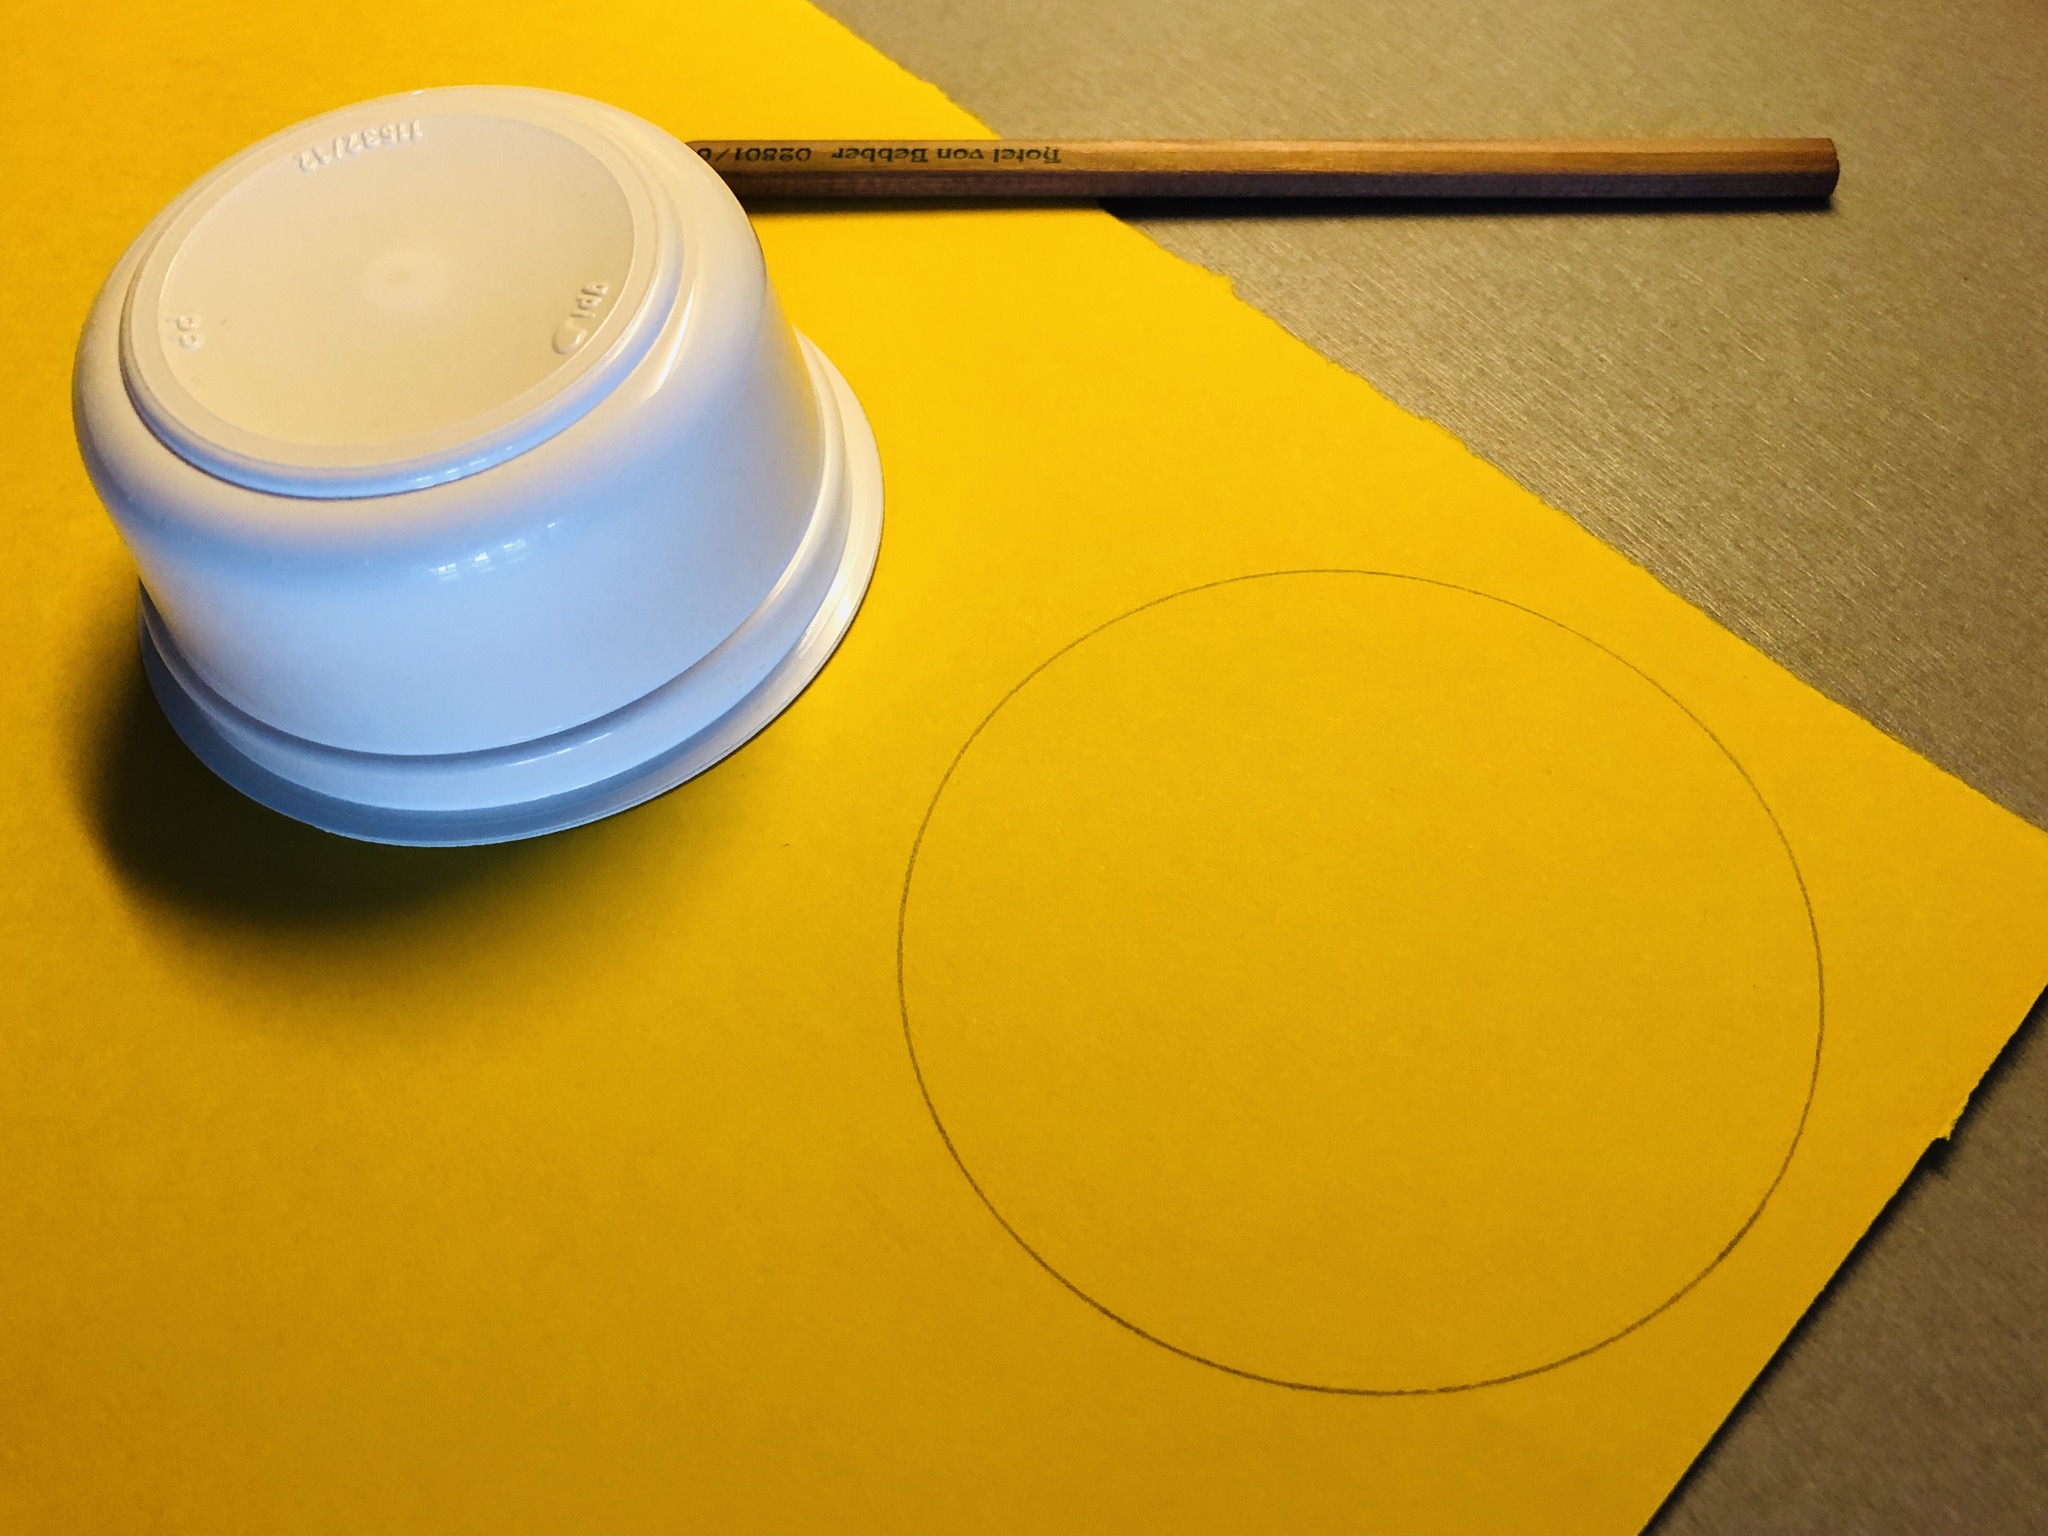 Bild zum Schritt 1 für die Kinder-Beschäftigung: 'Malt einen Kreis auf das Tonpapier in der Größe eurer...'